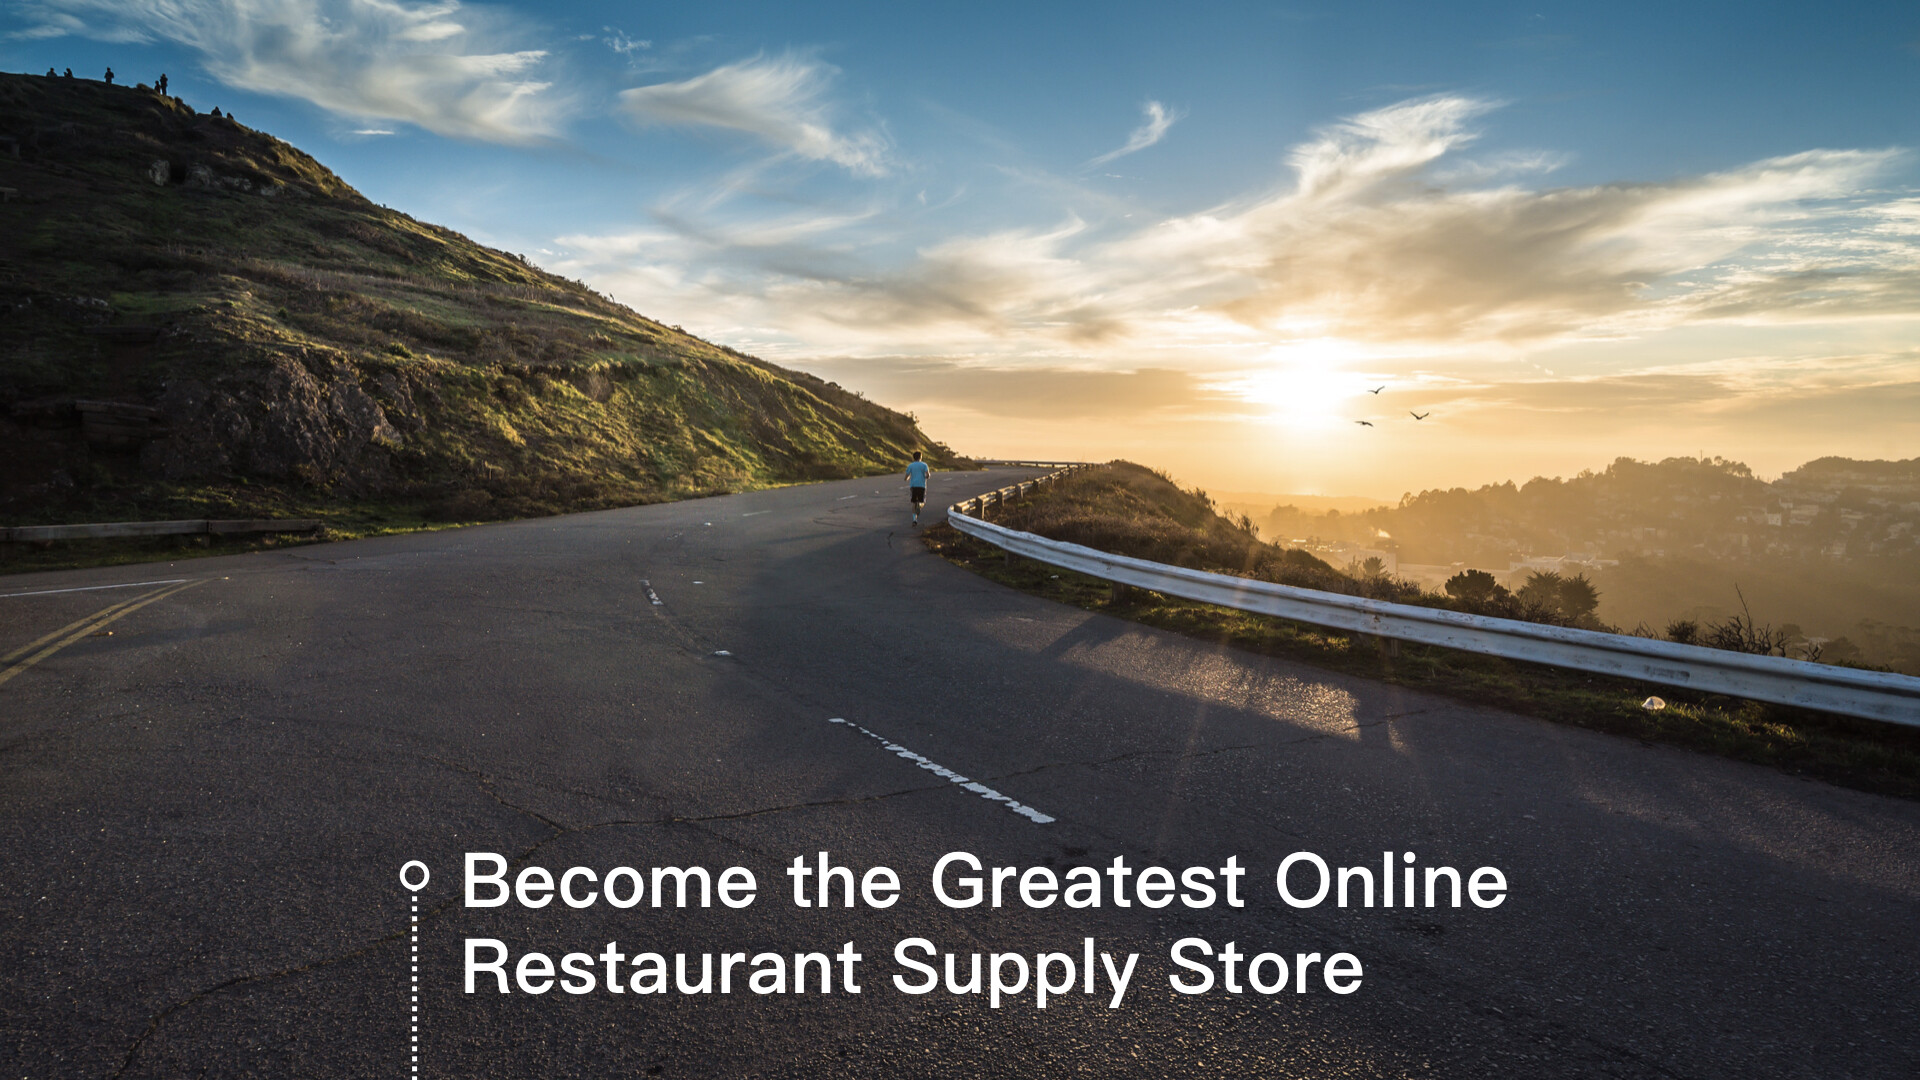 ez100-Restaurants-Supply-Store-e-commerce-vision